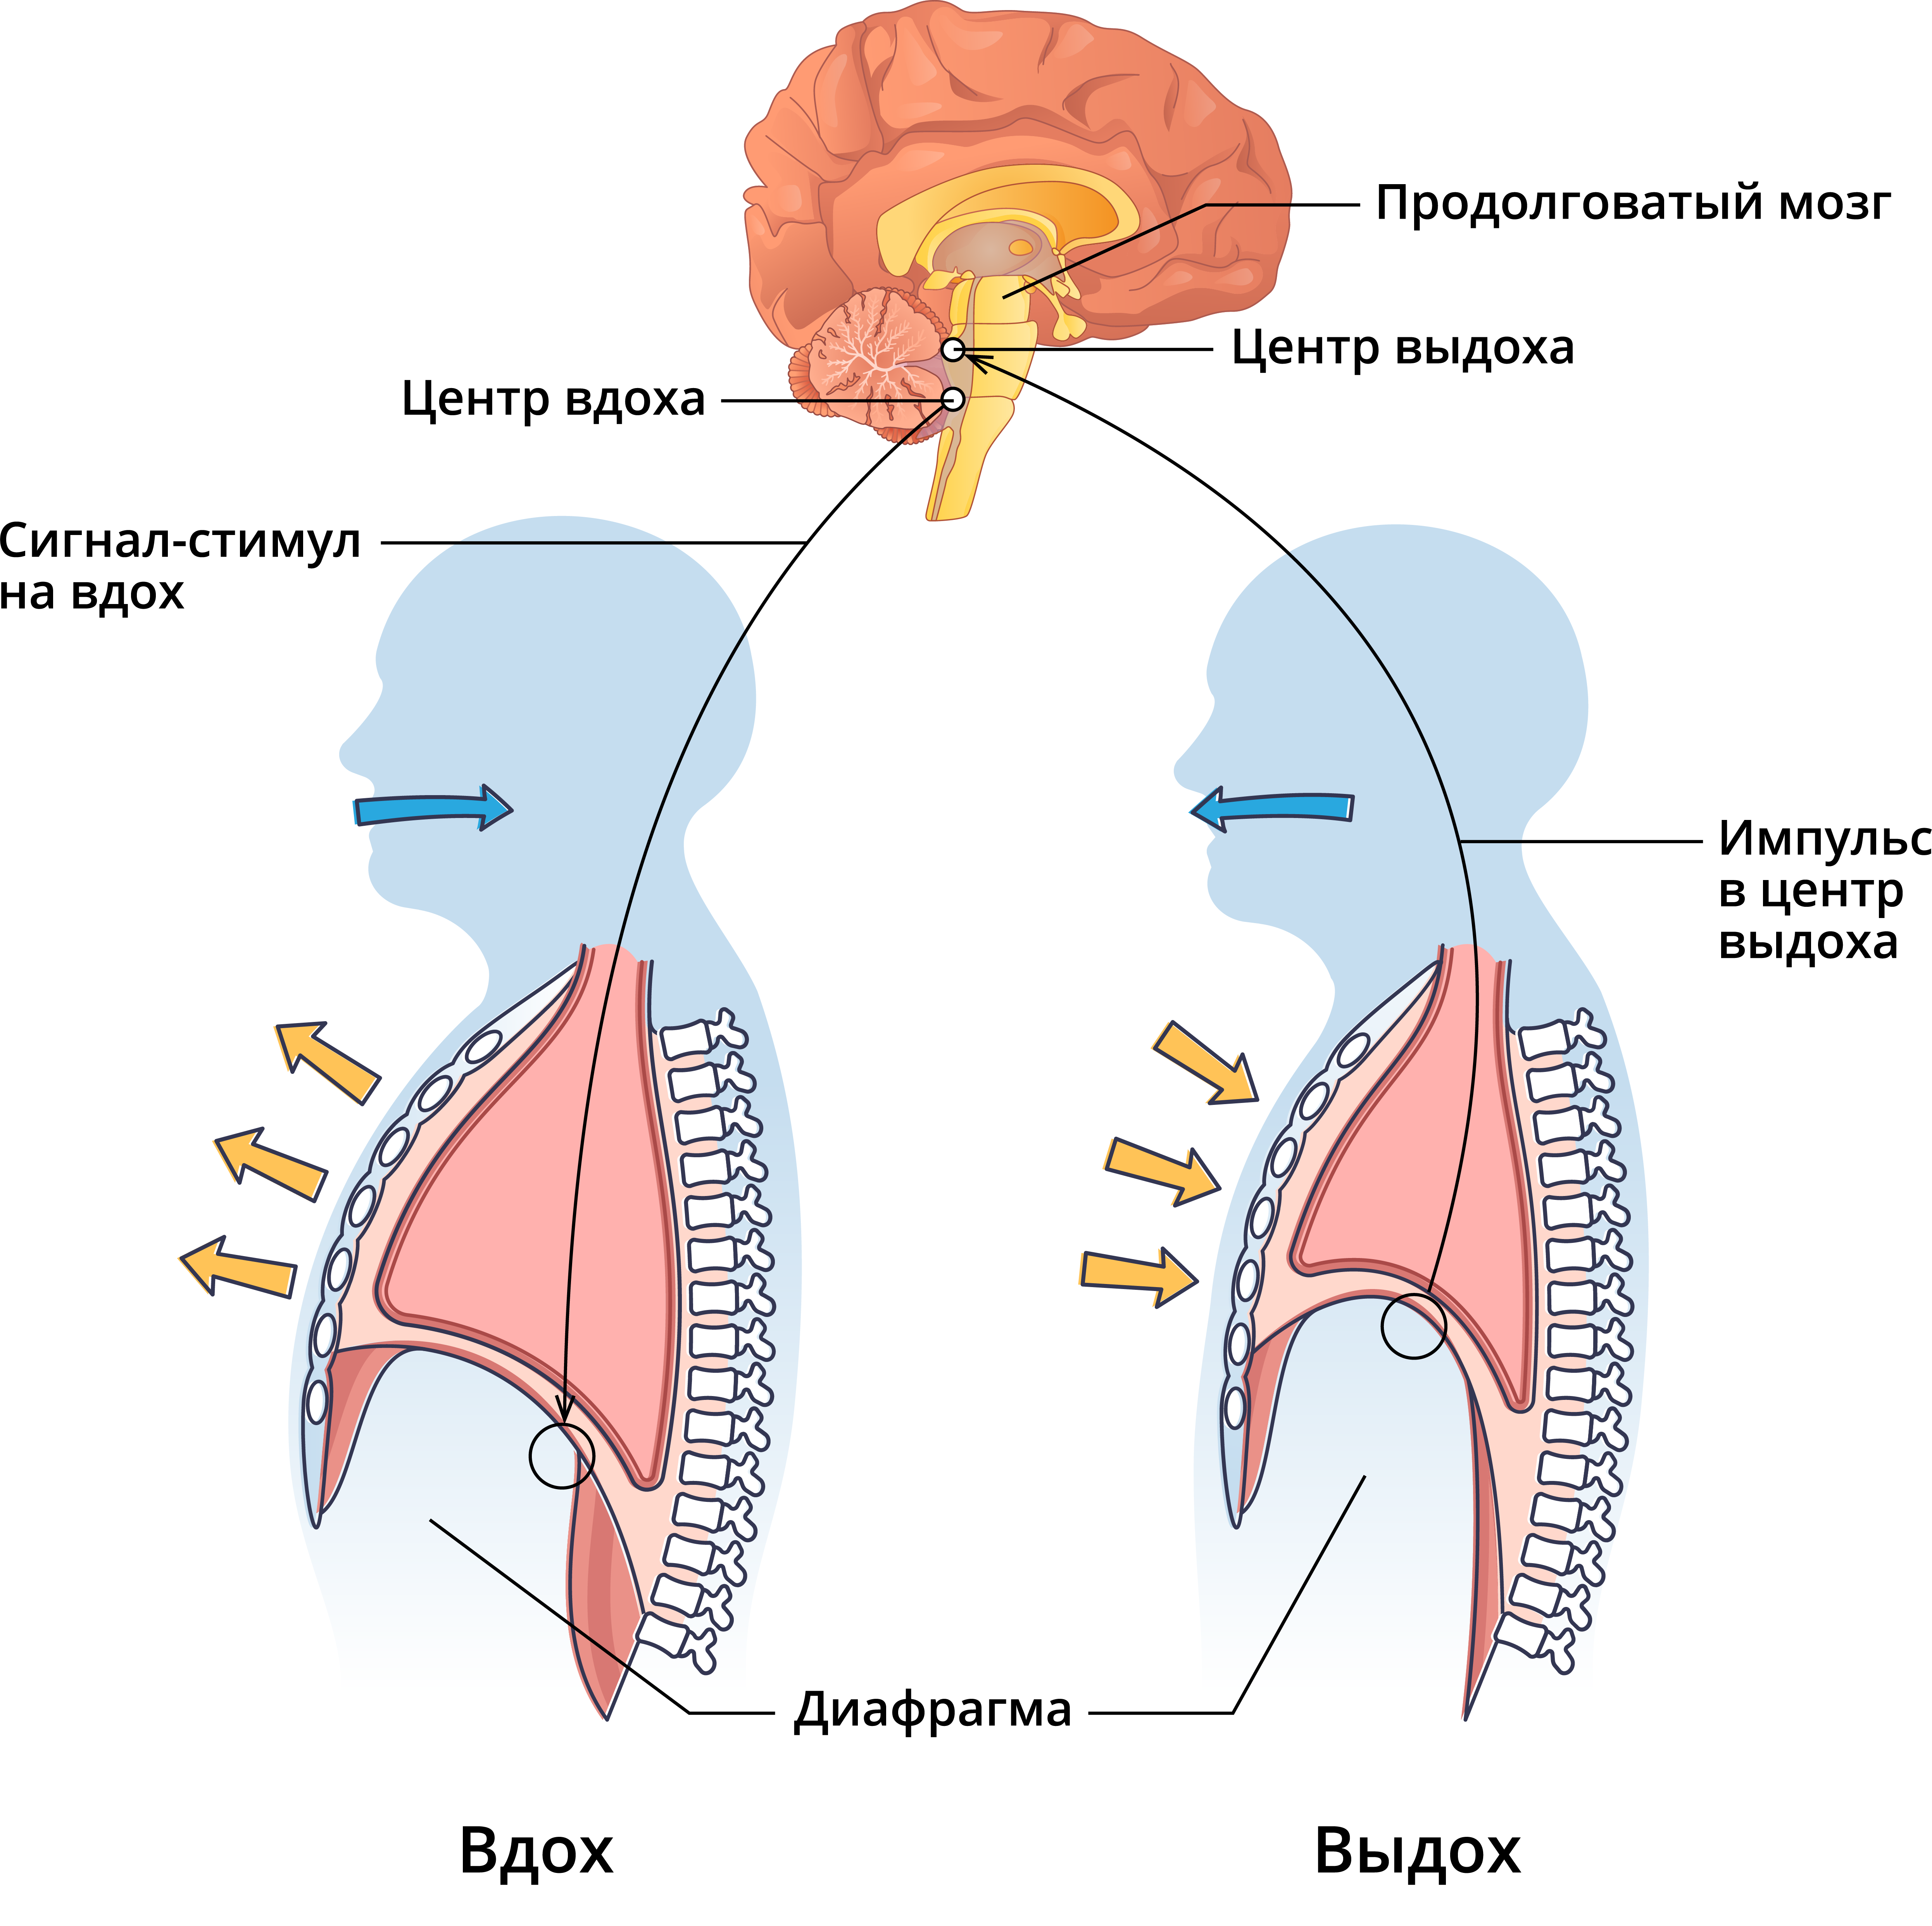 Процесс во время дыхательного движения. Рефлекторная регуляция дыхания схема. Защитные рефлексы дыхательной системы схема. Нервная регуляция дыхания схема. Регуляция дыхательных движений схема.